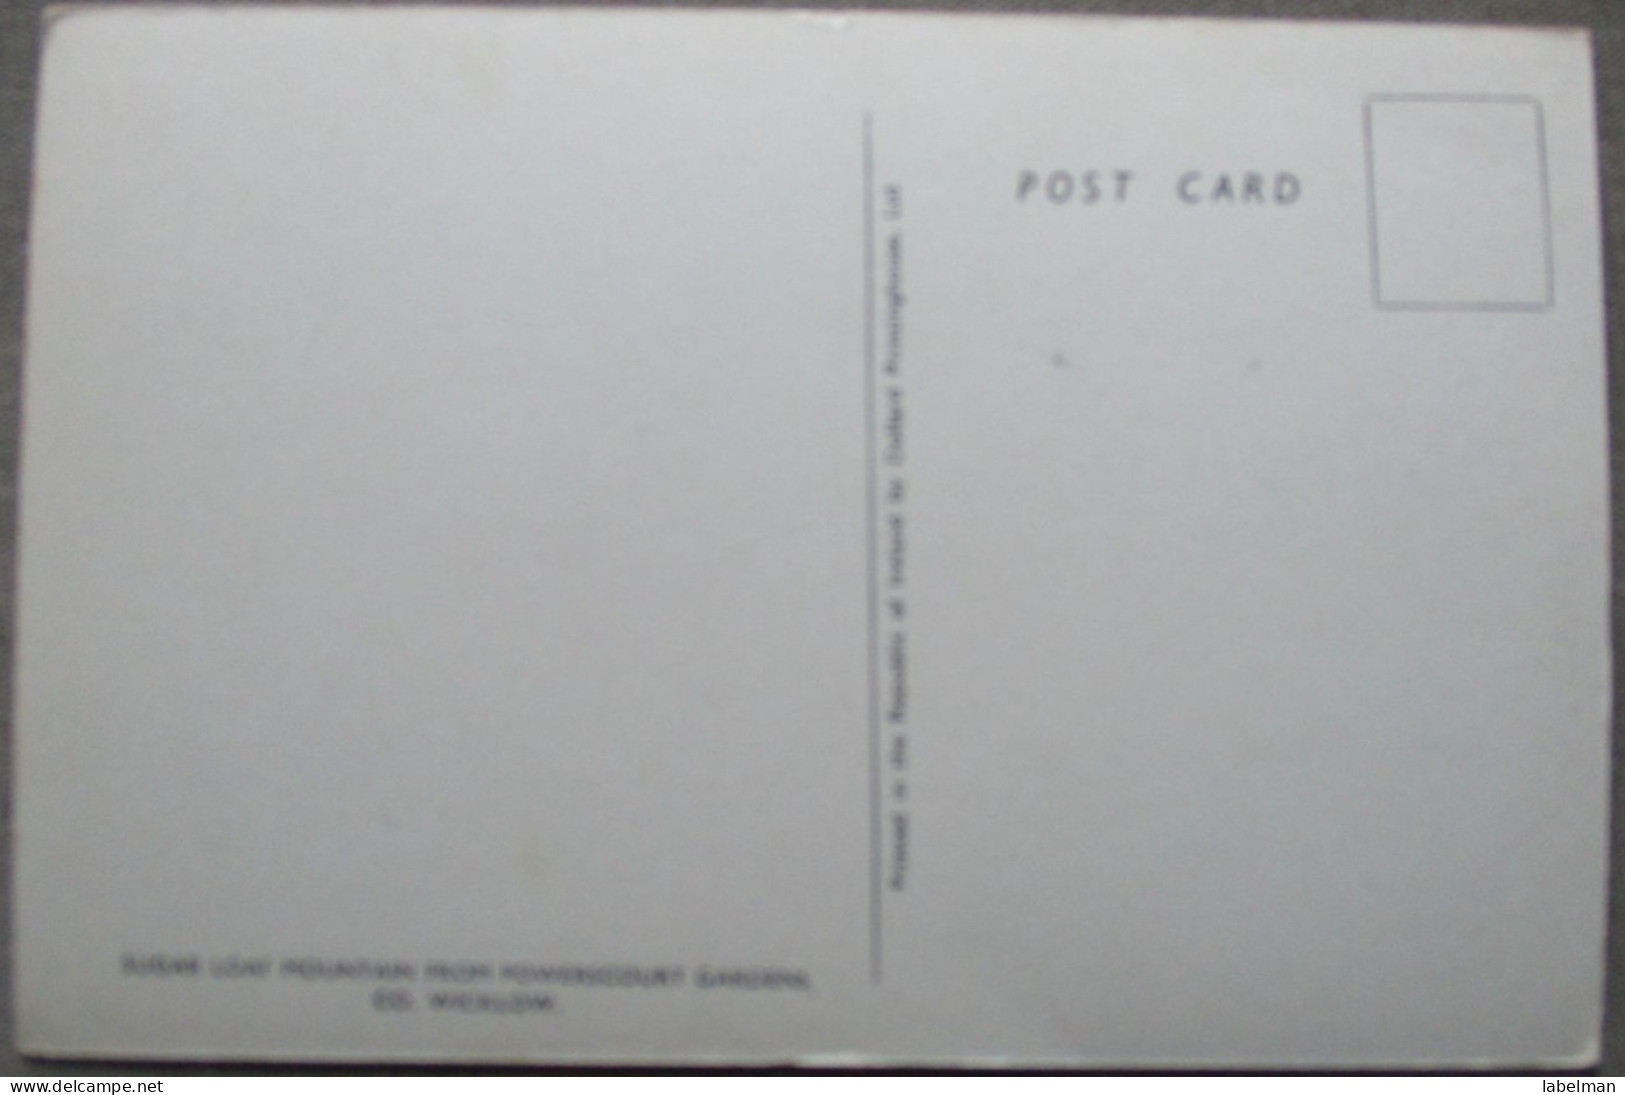 IRLAND UK UNITED KINGDOM WICKLOW SUGAR LOAF MT KARTE CARD POSTKARTE POSTCARD ANSICHTSKARTE CARTOLINA CARTE POSTALE - Verzamelingen & Kavels